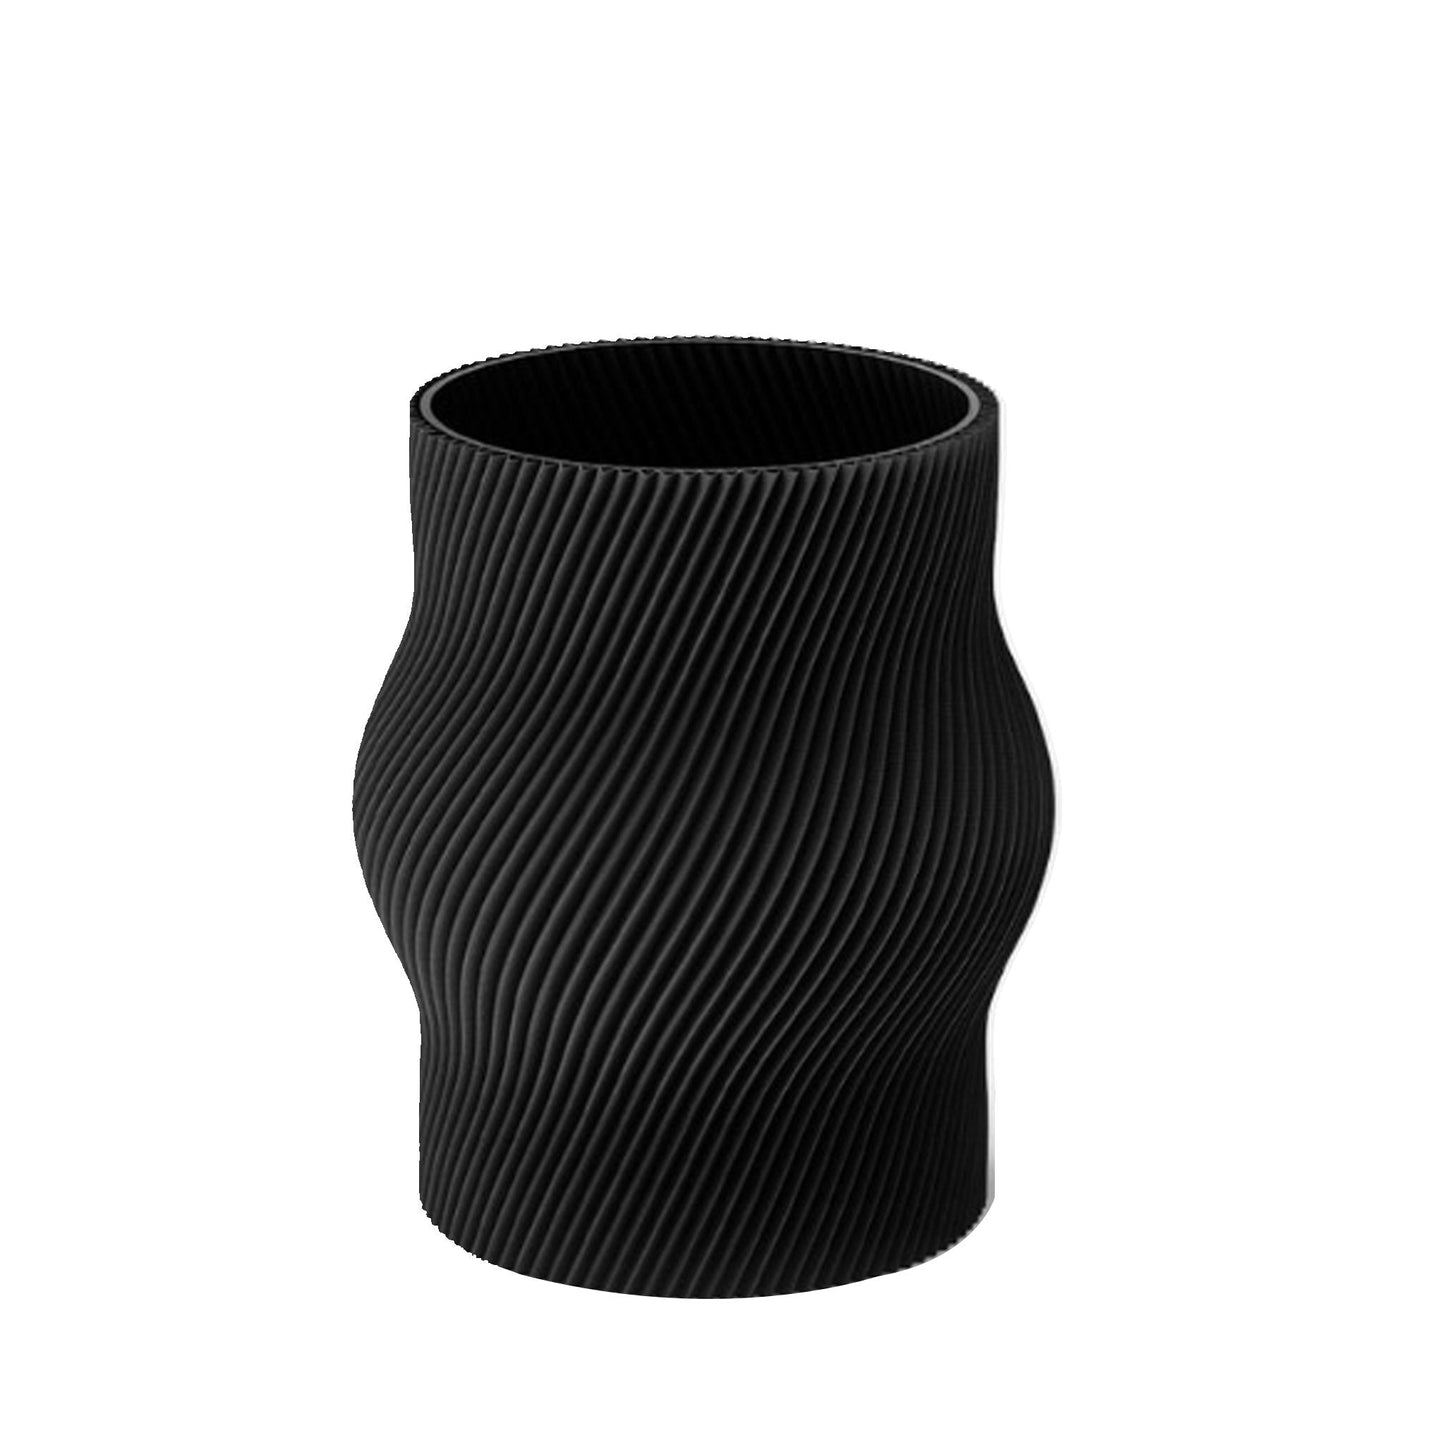 Bauchige 3D gedruckte Vase - Mitternachts-Schwarz - Vandeley